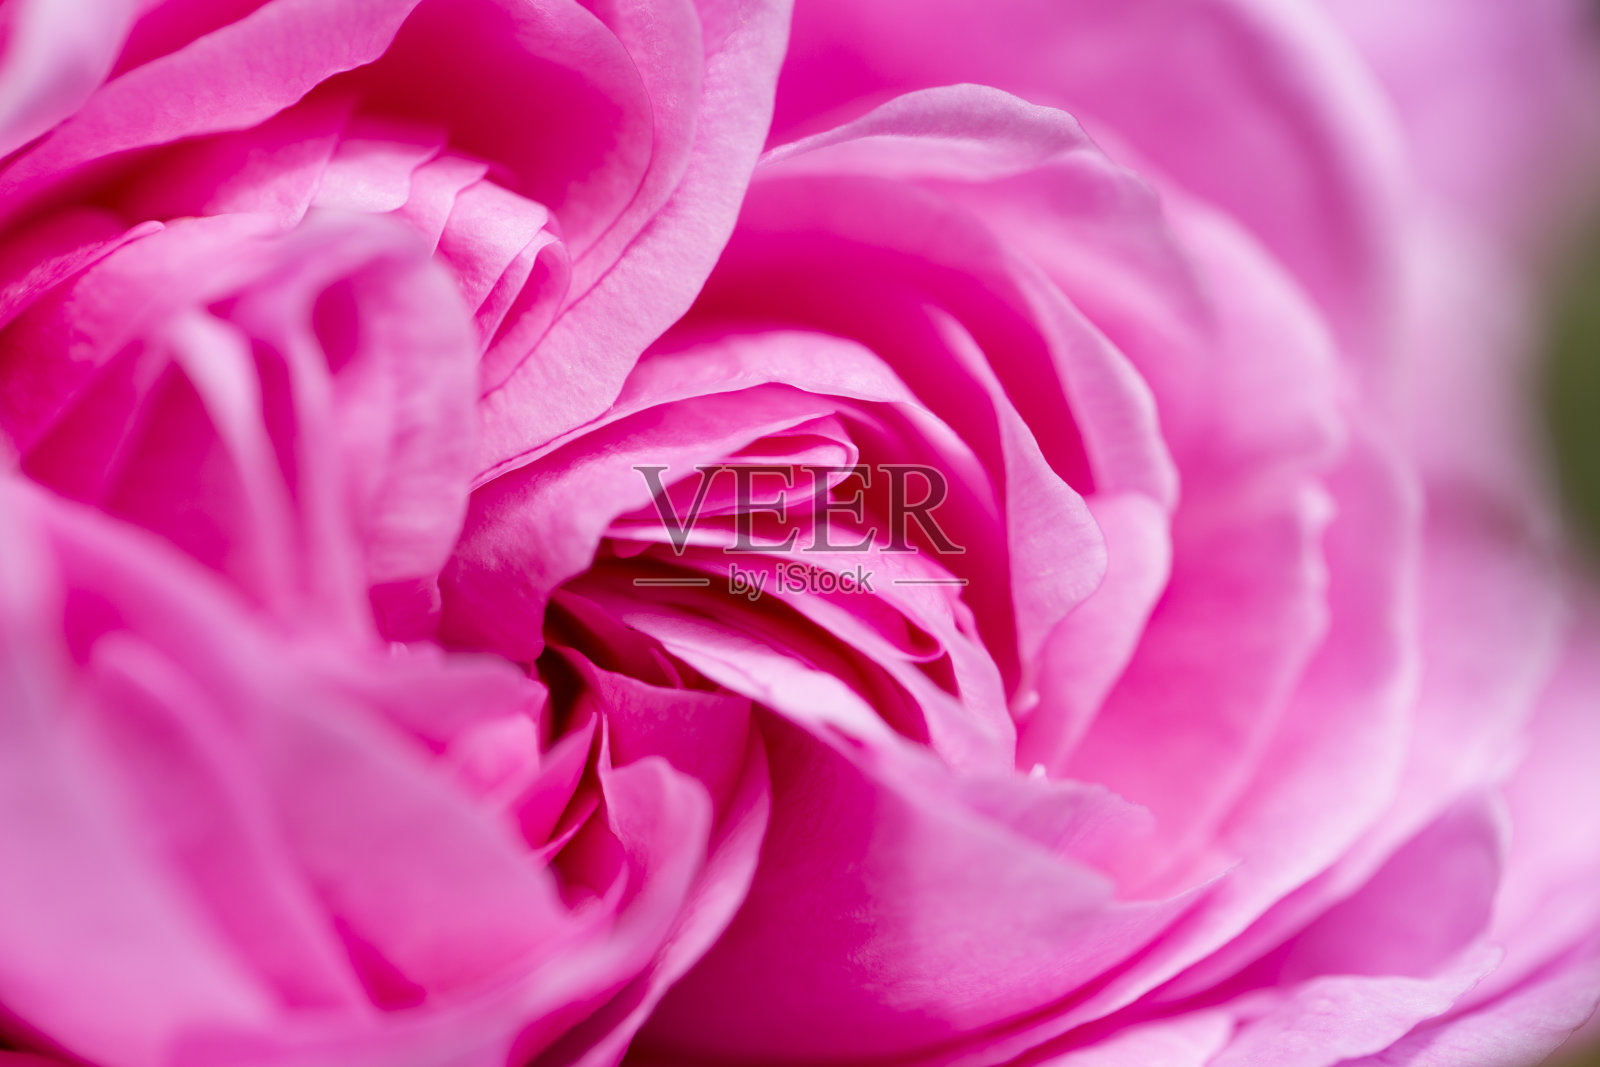 近距离的粉红色玫瑰花瓣照片摄影图片